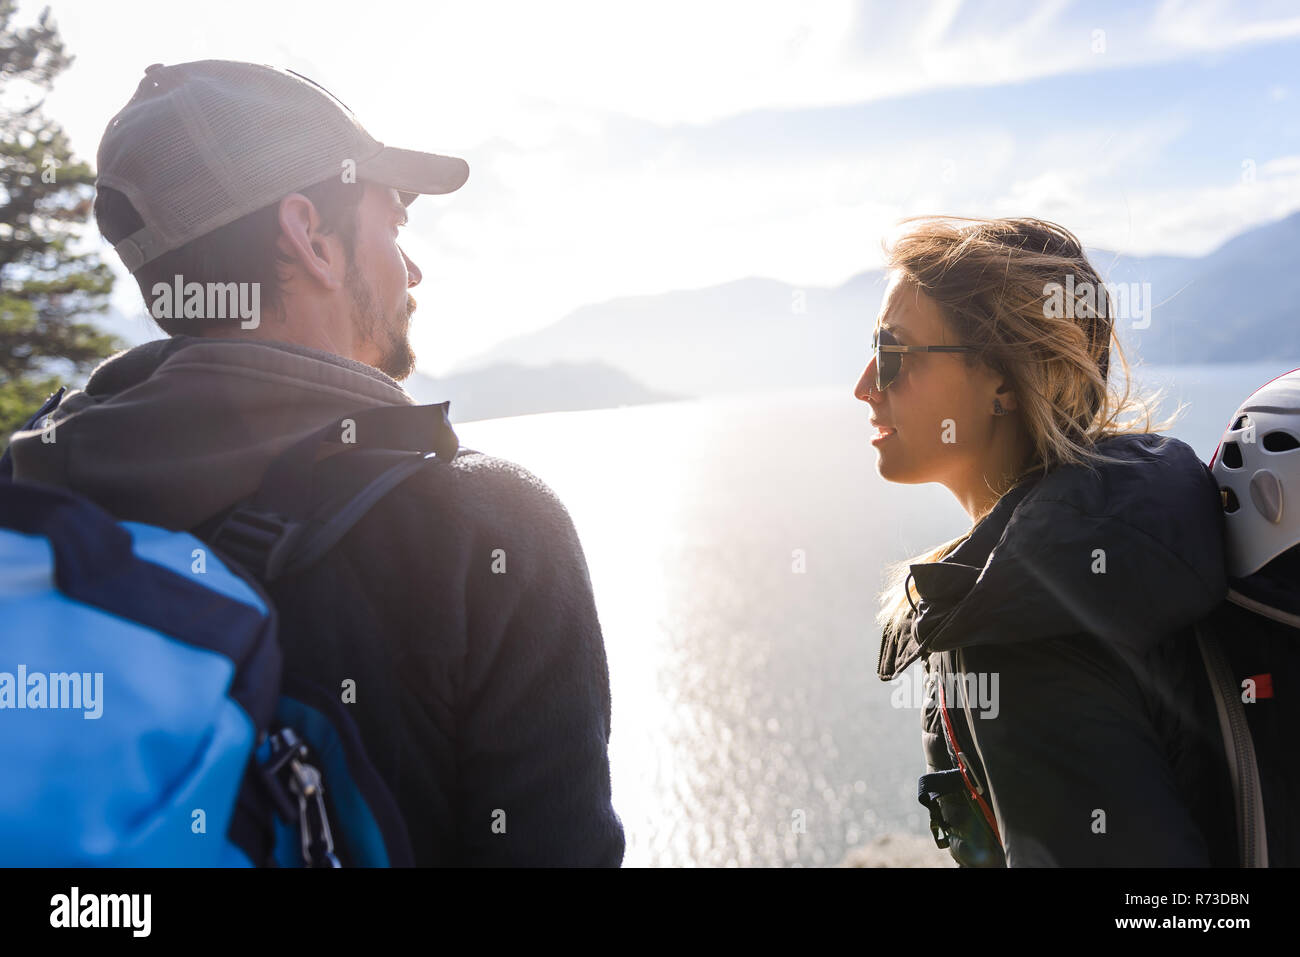 Rock climber couple on Malamute, Squamish, Canada Stock Photo